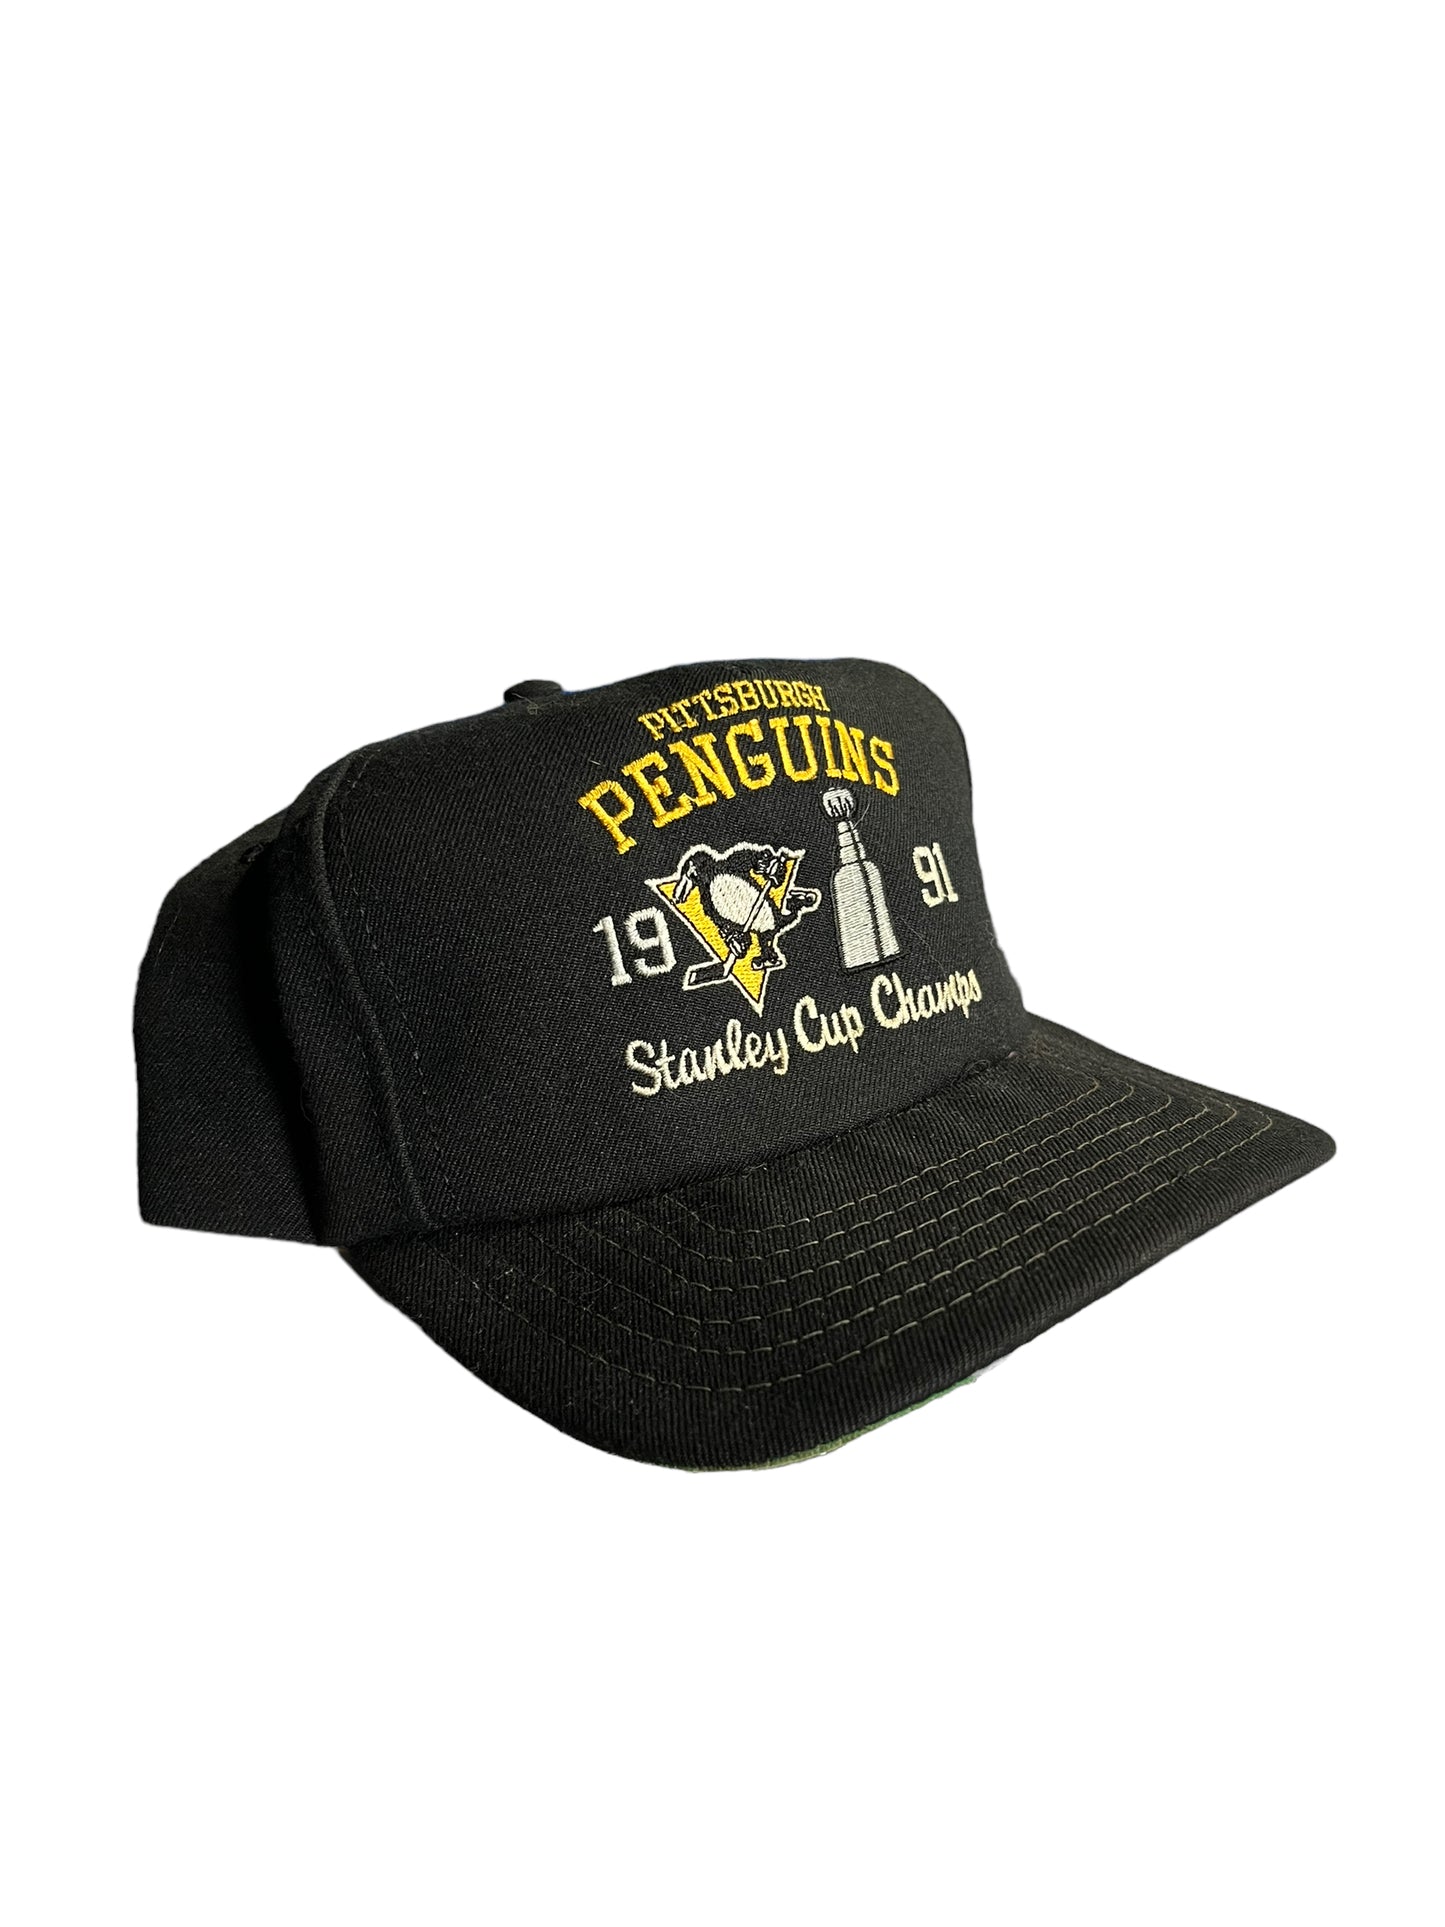 Vintage Penguins Snapback Hat